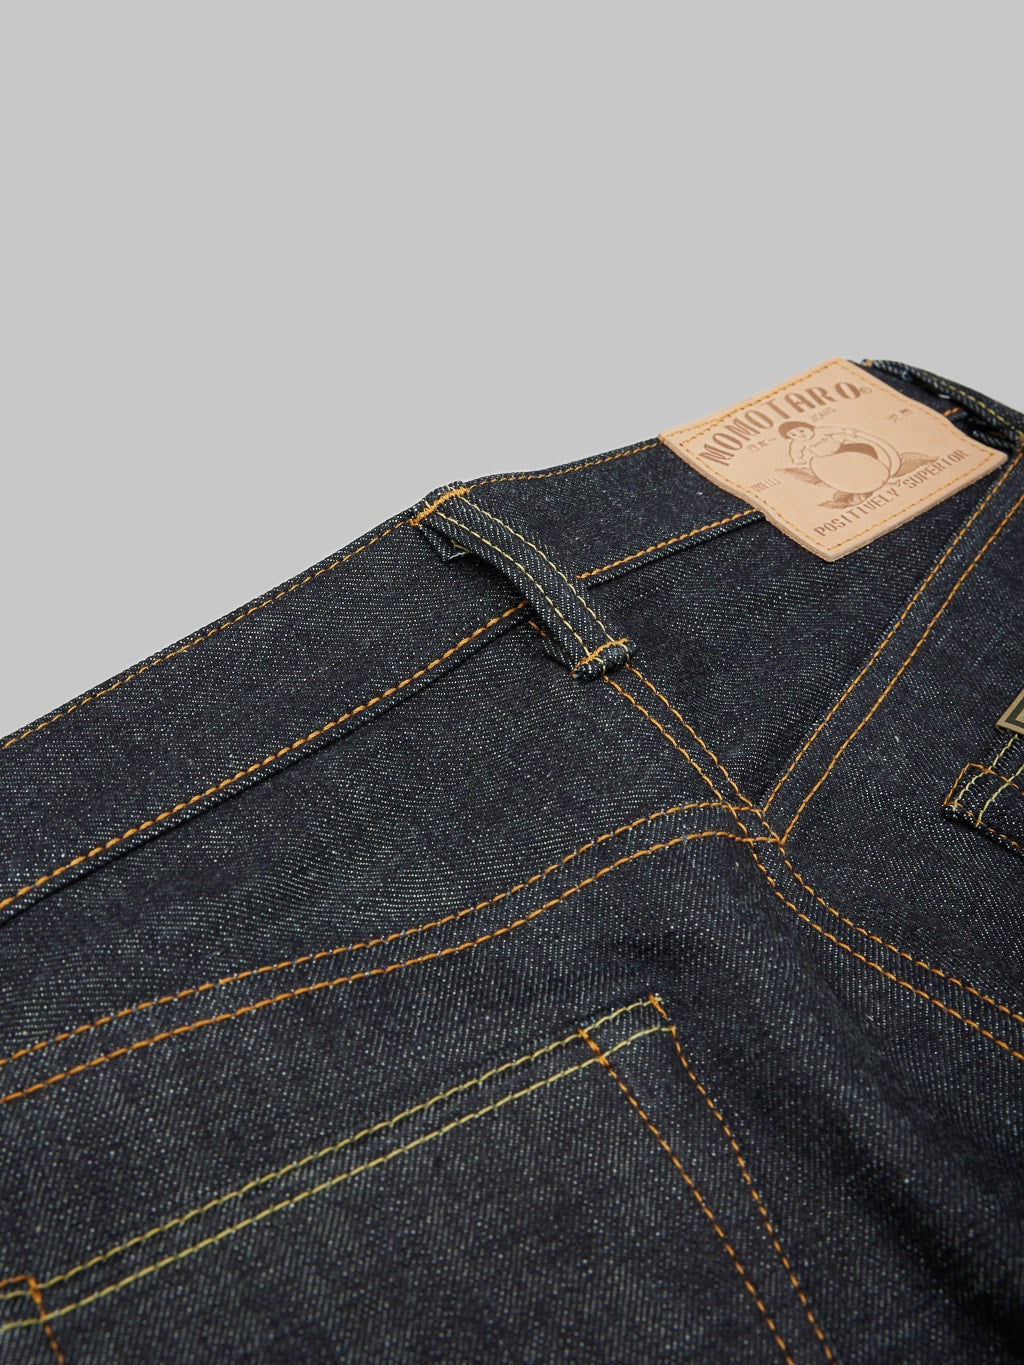 momotaro jeans 0405 v selvedge denim high tapered belt loop